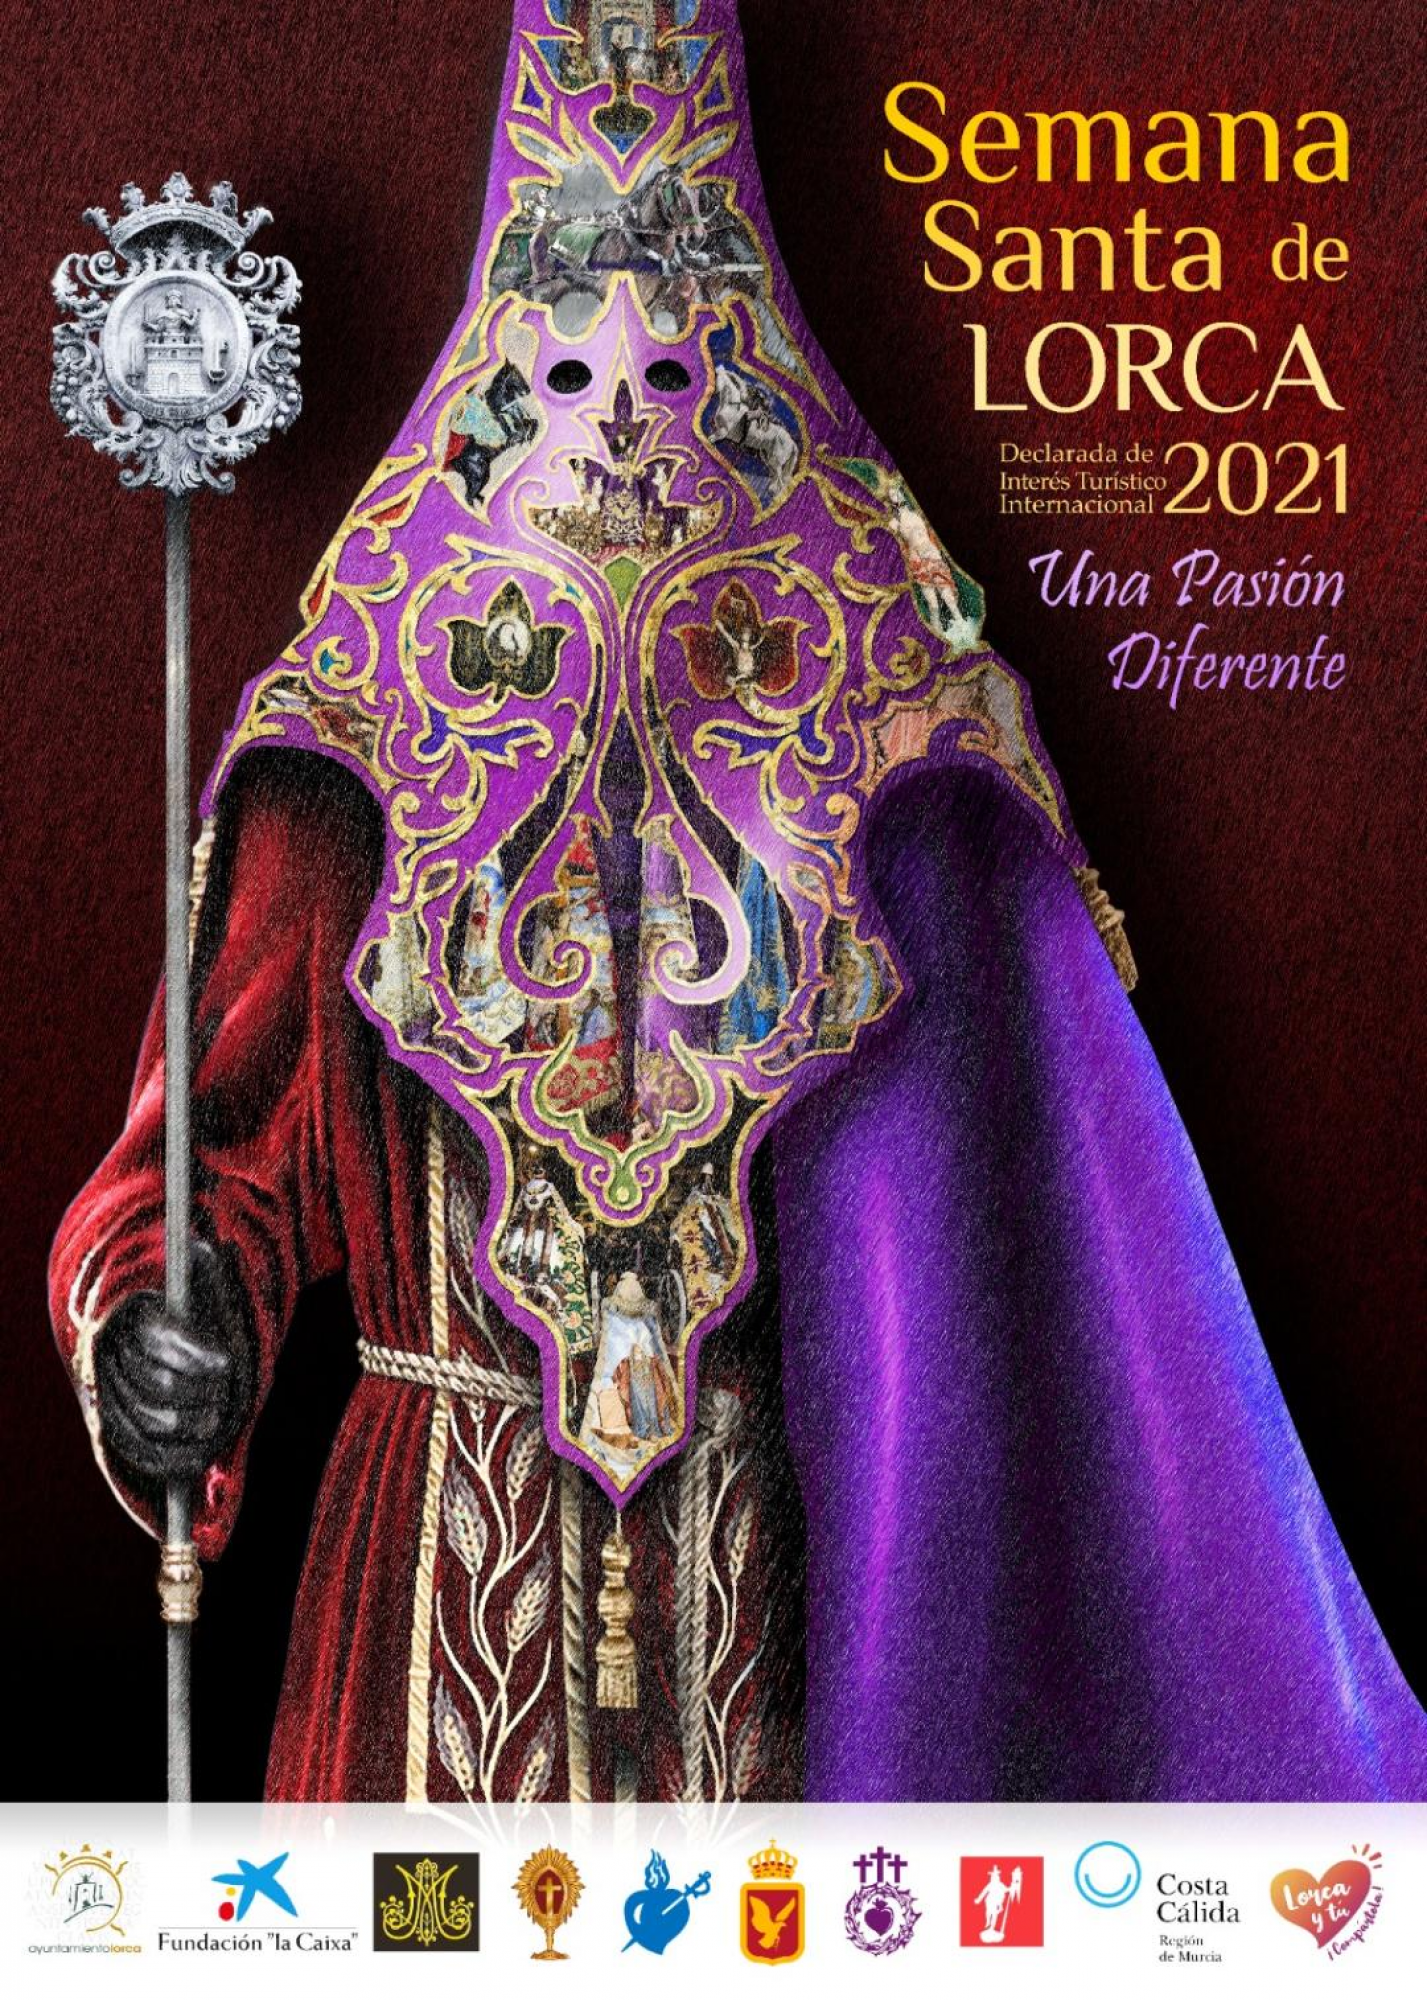 El cartel anunciador de la Semana Santa de Lorca 2021 tiene como protagonista al bordado lorquino